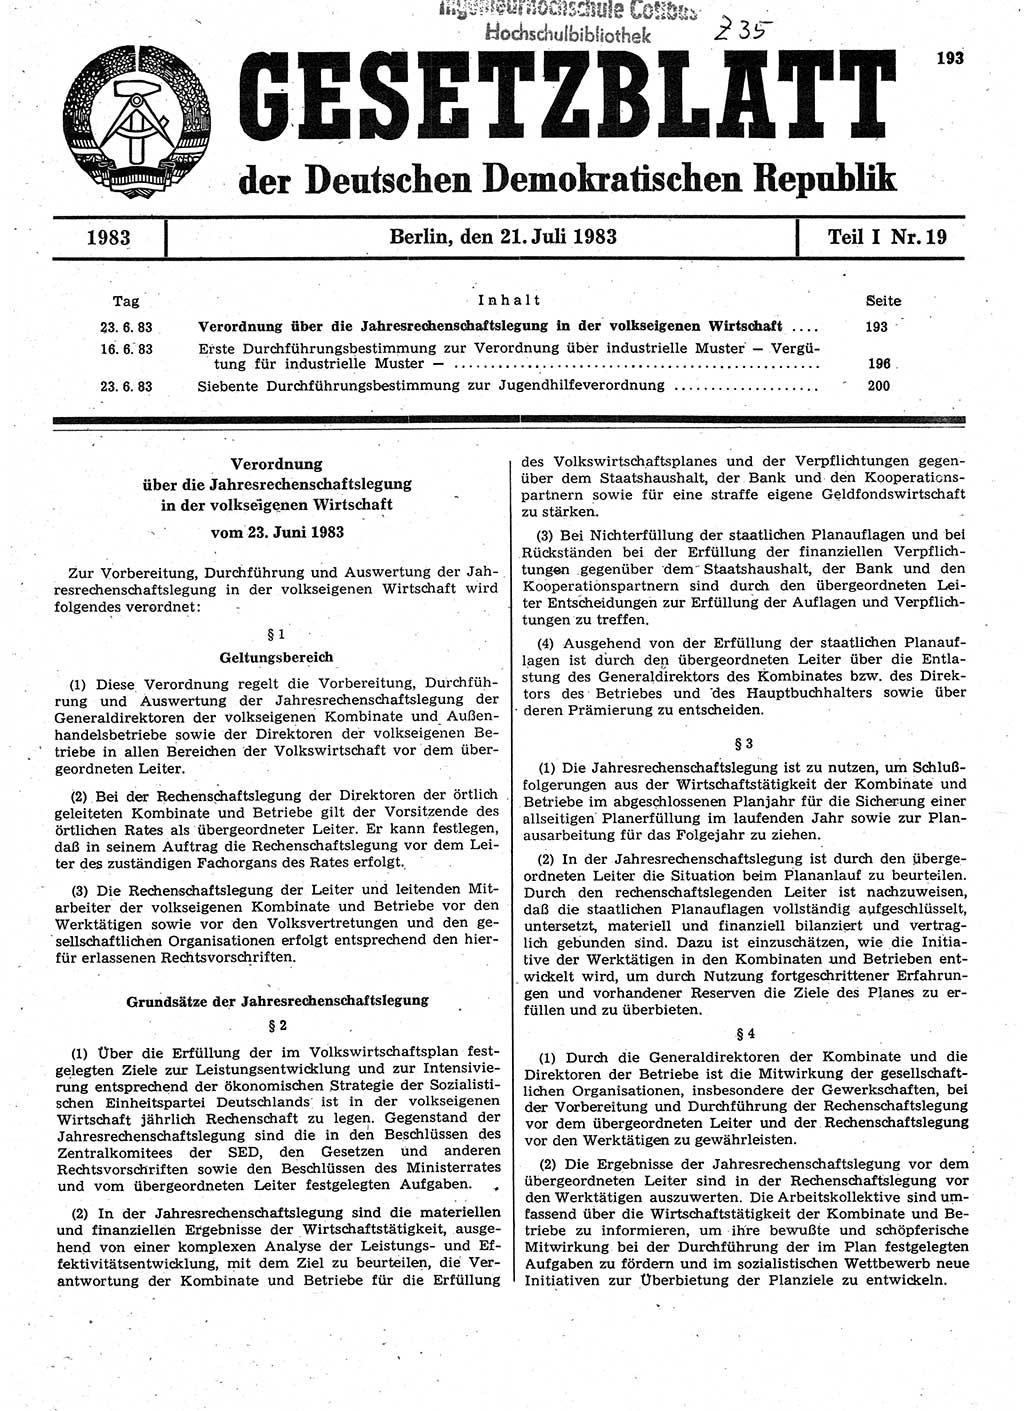 Gesetzblatt (GBl.) der Deutschen Demokratischen Republik (DDR) Teil Ⅰ 1983, Seite 193 (GBl. DDR Ⅰ 1983, S. 193)